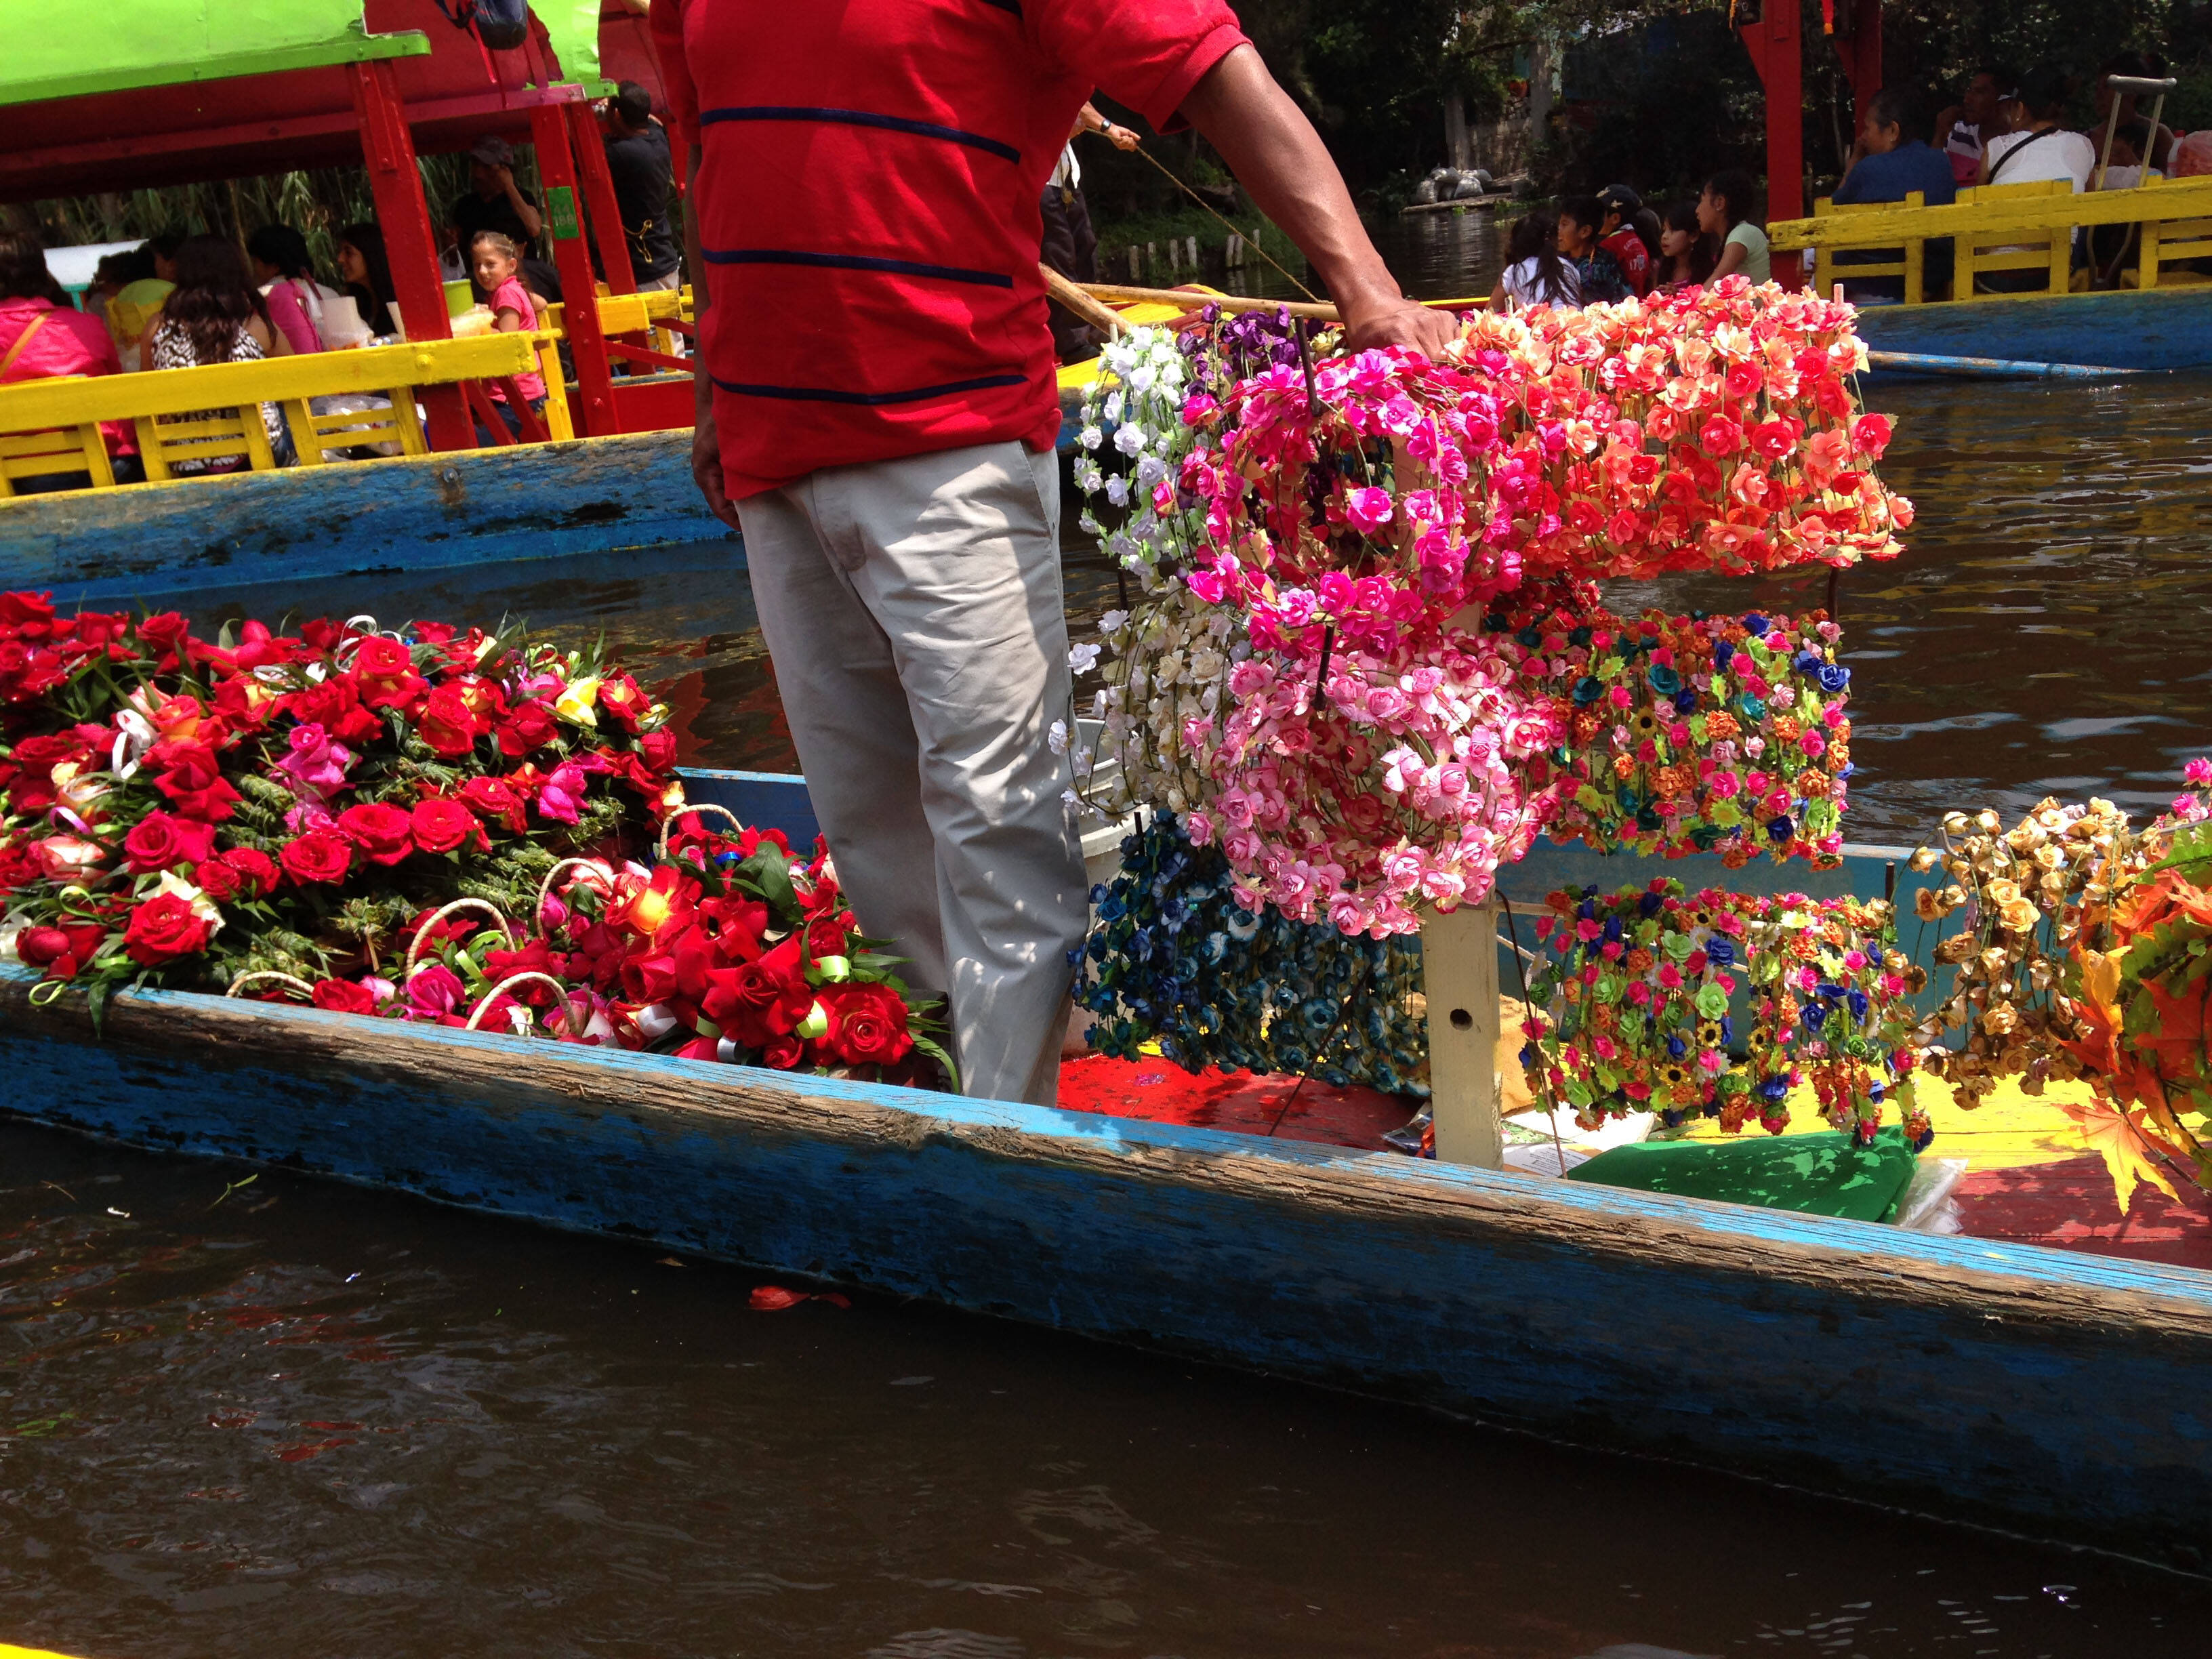 Antigamente, os canais serviam também para comércio. Até hoje, barquinhos menores cruzam as trajineras chamando atenção dos turistas para flores, plantas, mantas e etc. Foto: Nina Ramos/iG